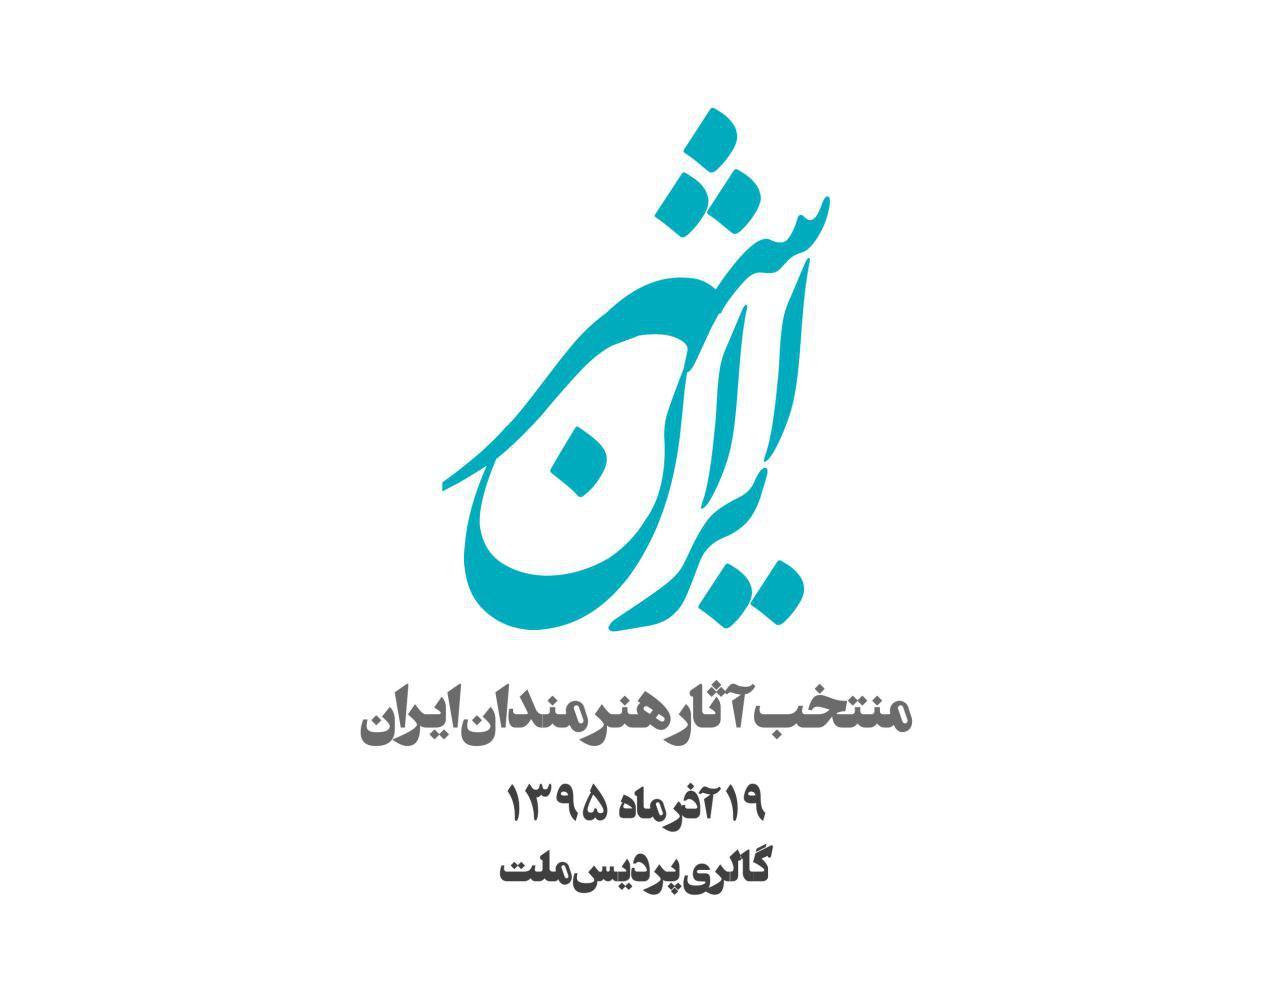 فراخوان , نمایشگاه ایران شهر , نمایشگاه هنر ,گالری پردیس ملت